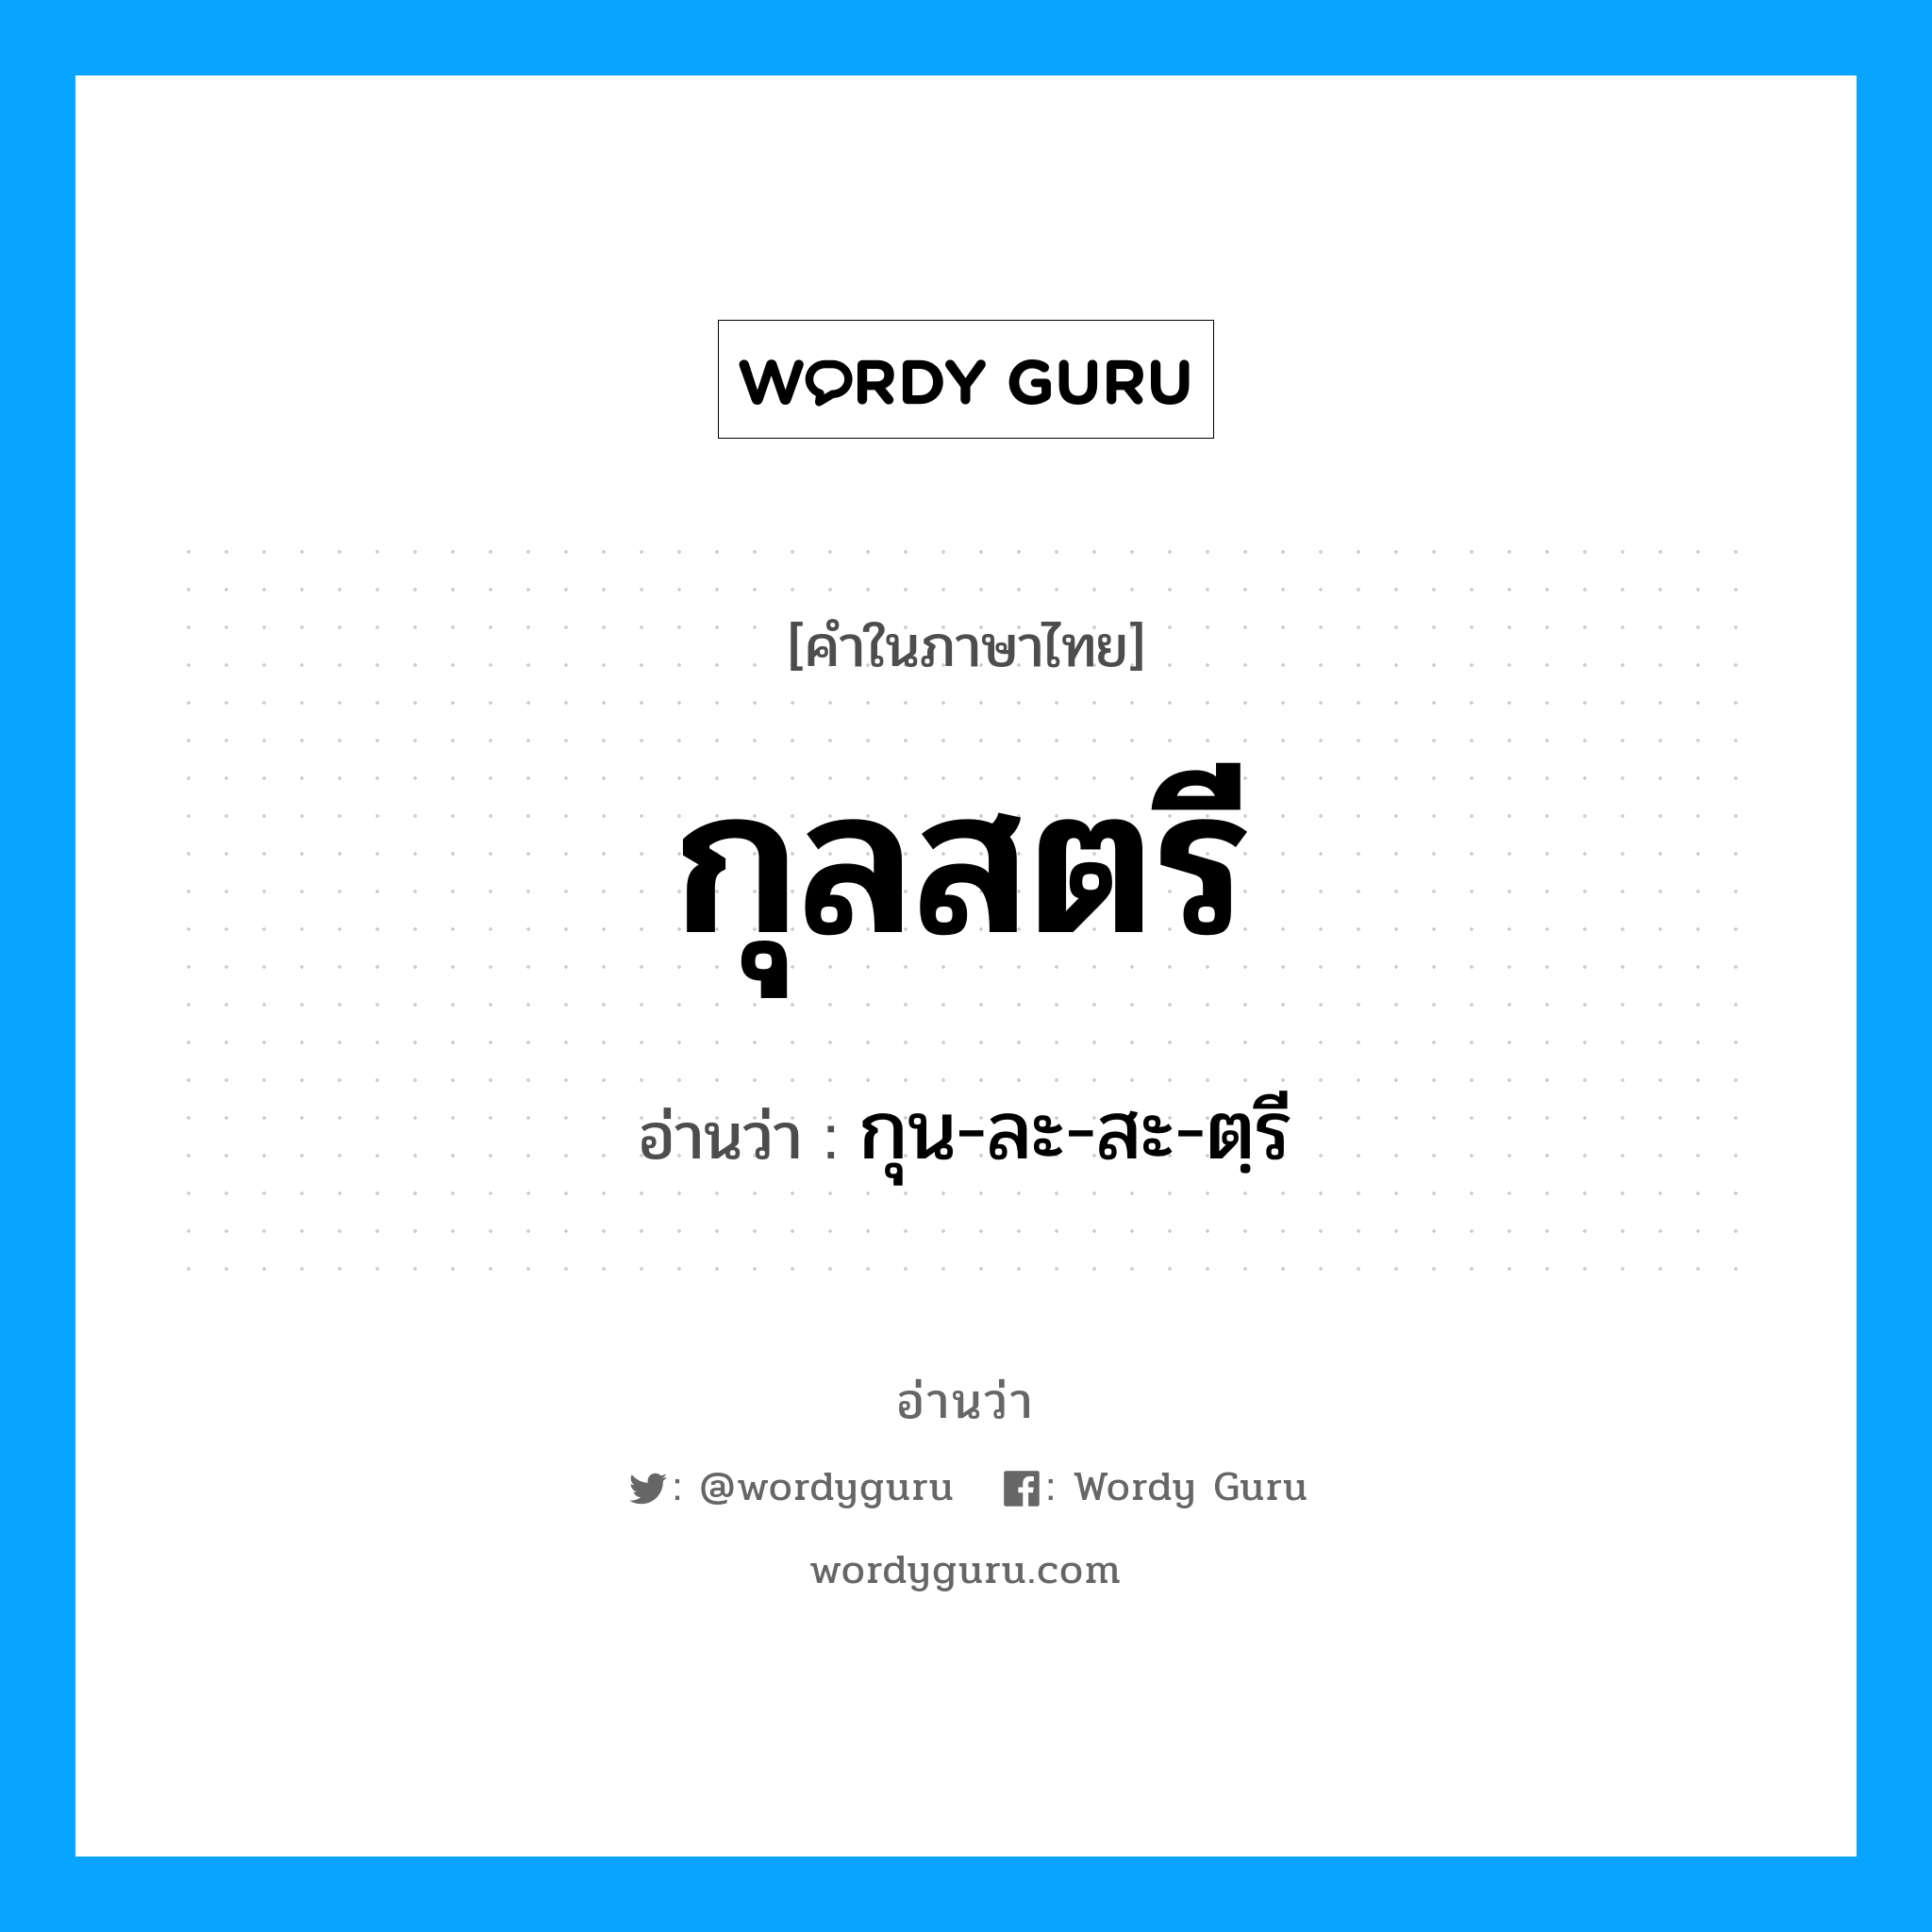 กุน-ละ-สะ-ตฺรี เป็นคำอ่านของคำไหน?, คำในภาษาไทย กุน-ละ-สะ-ตฺรี อ่านว่า กุลสตรี